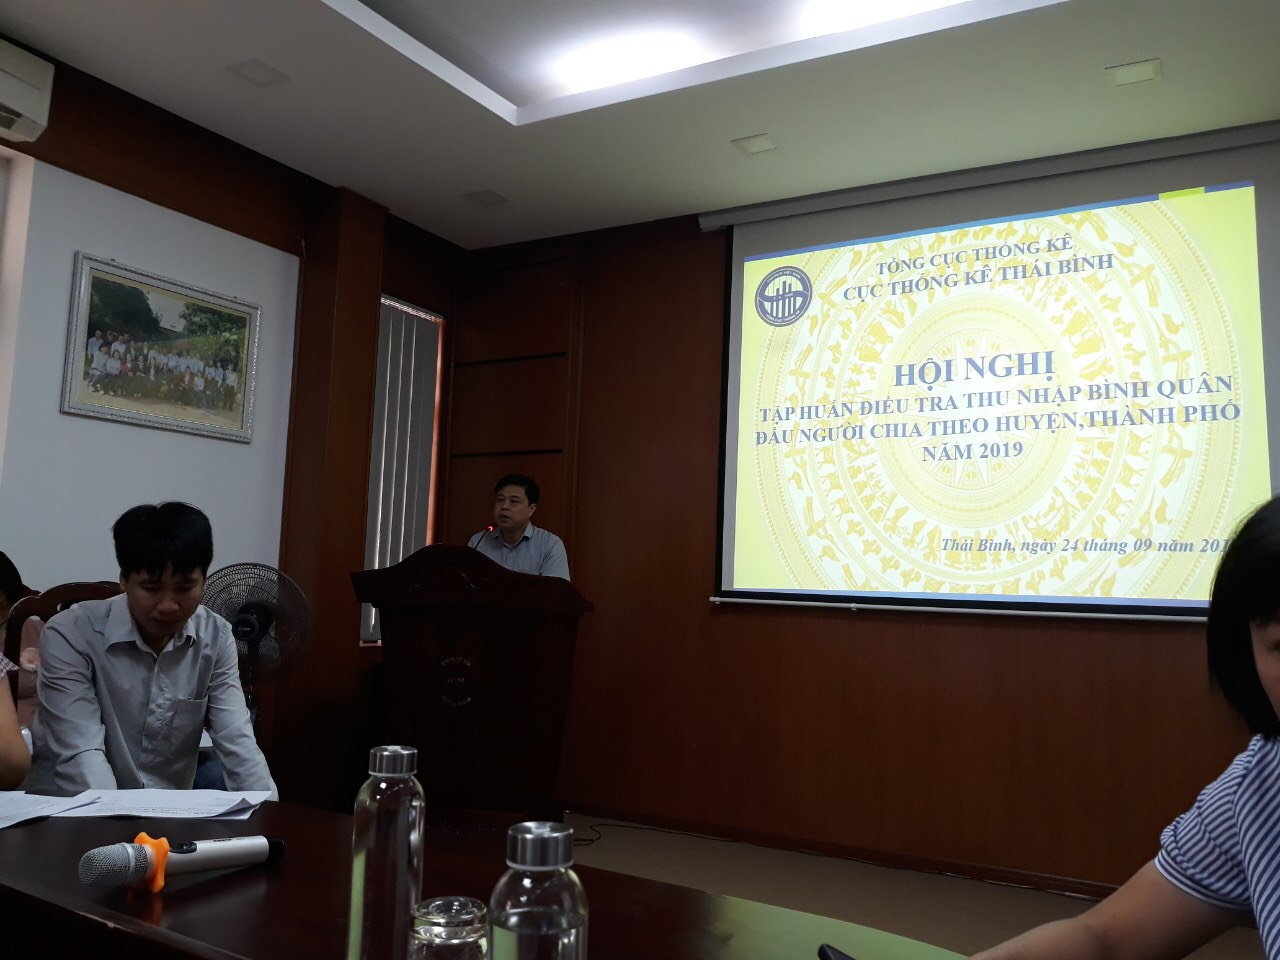 Cục Thống kê Thái Bình tổ chức tập huấn nghiệp vụ Điều tra Thu nhập bình quân đầu người chia theo huyện, thành phố năm 2019